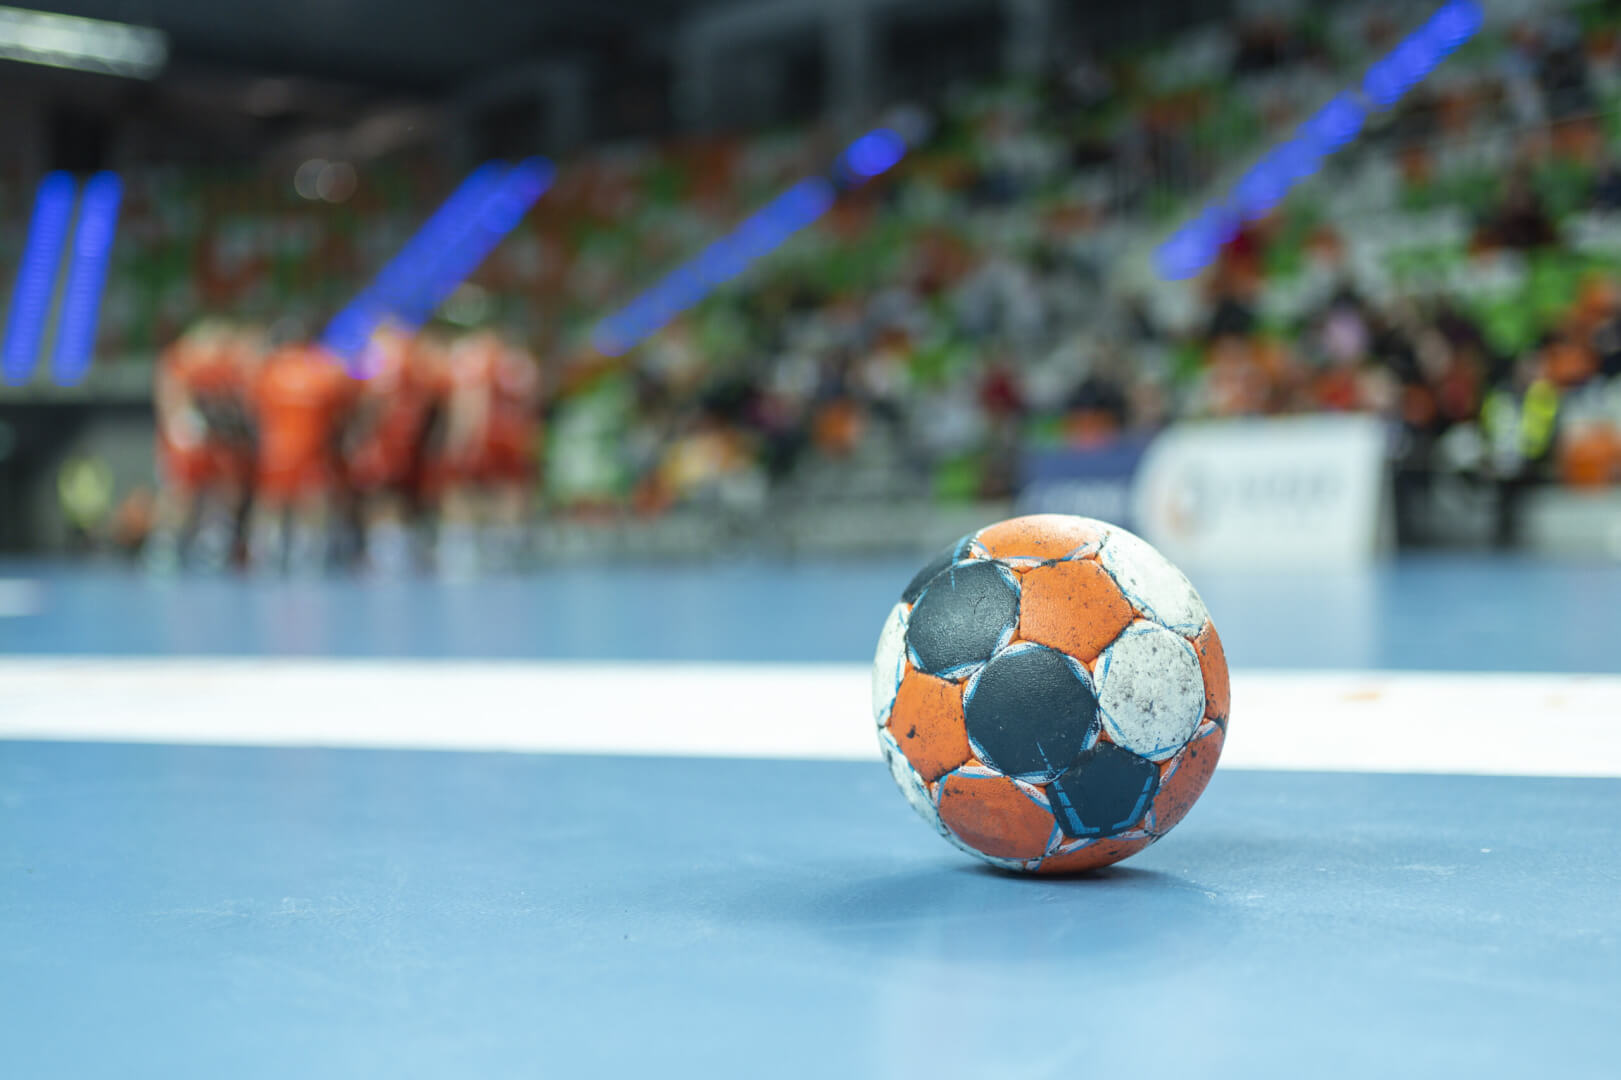 Vorschau Handball Champions League Final Four 2022 TVSportguide.de